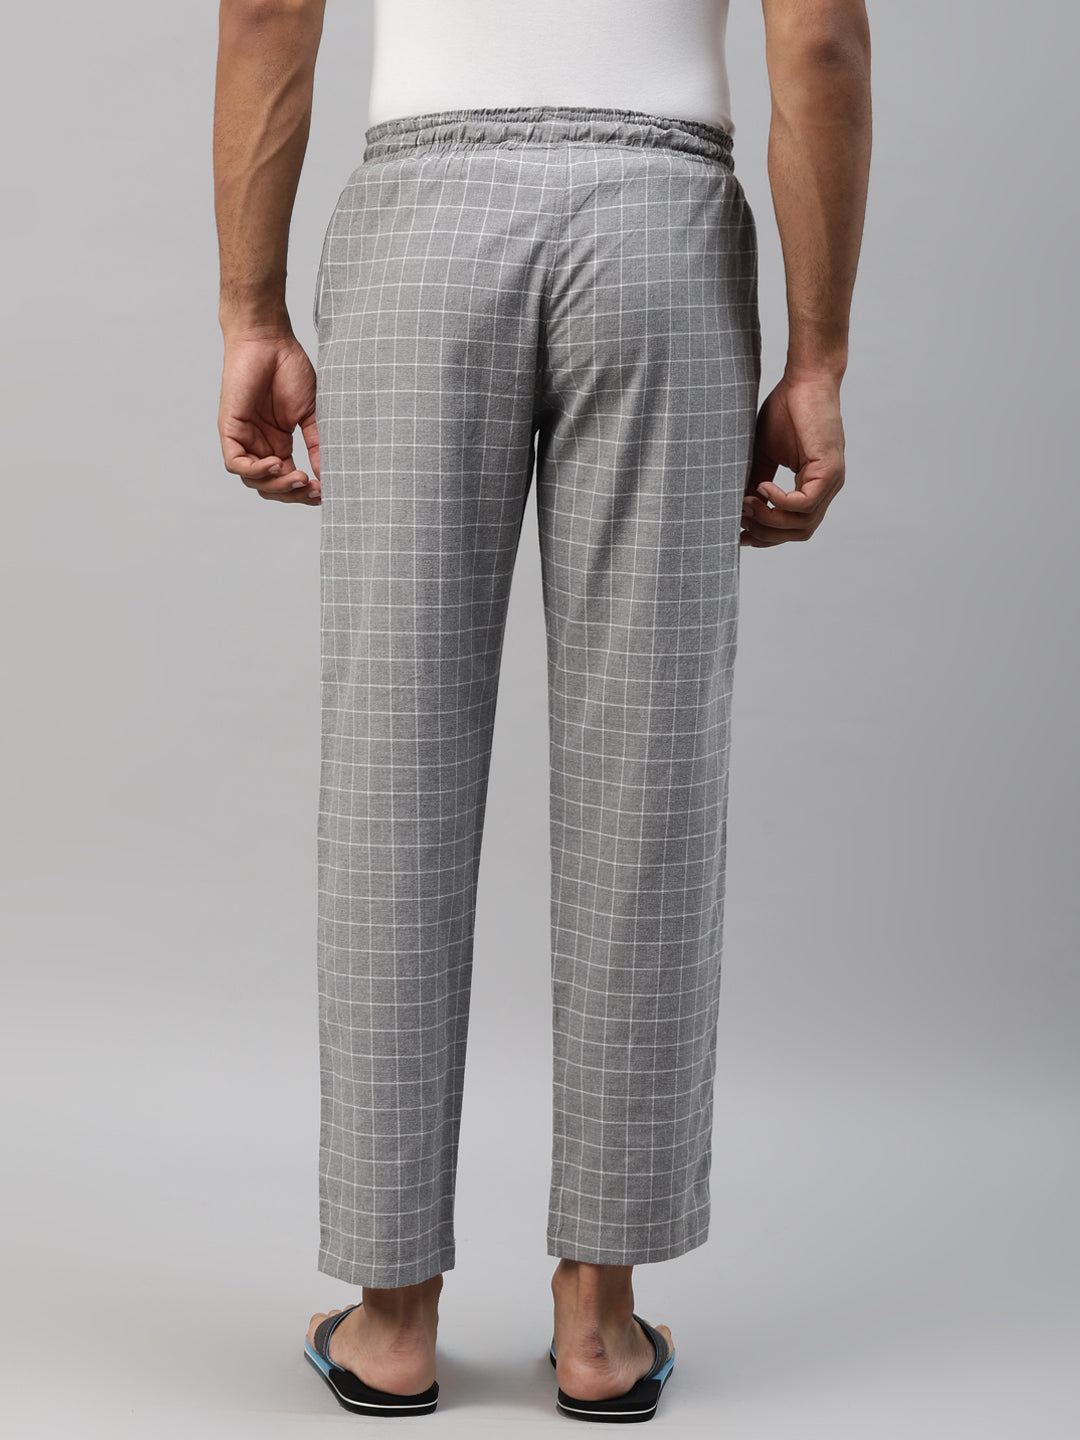 Don Vino Men's Grey & White Checks Lounge Pants